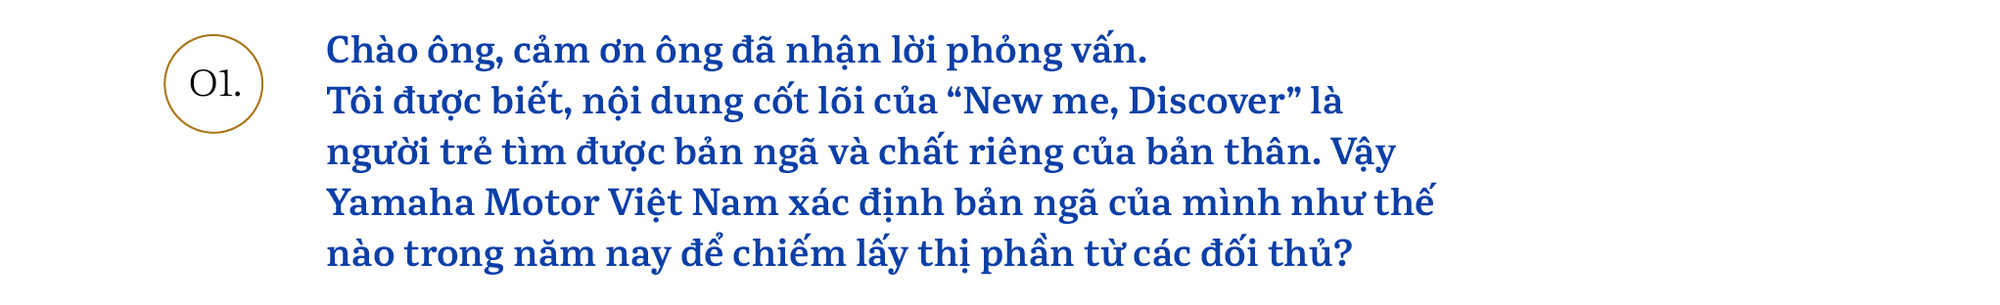 Chủ tịch Yamaha Việt Nam: ‘Chúng tôi sẽ khơi dậy khách hàng trẻ tìm được bản ngã của chính mình’ - Ảnh 1.